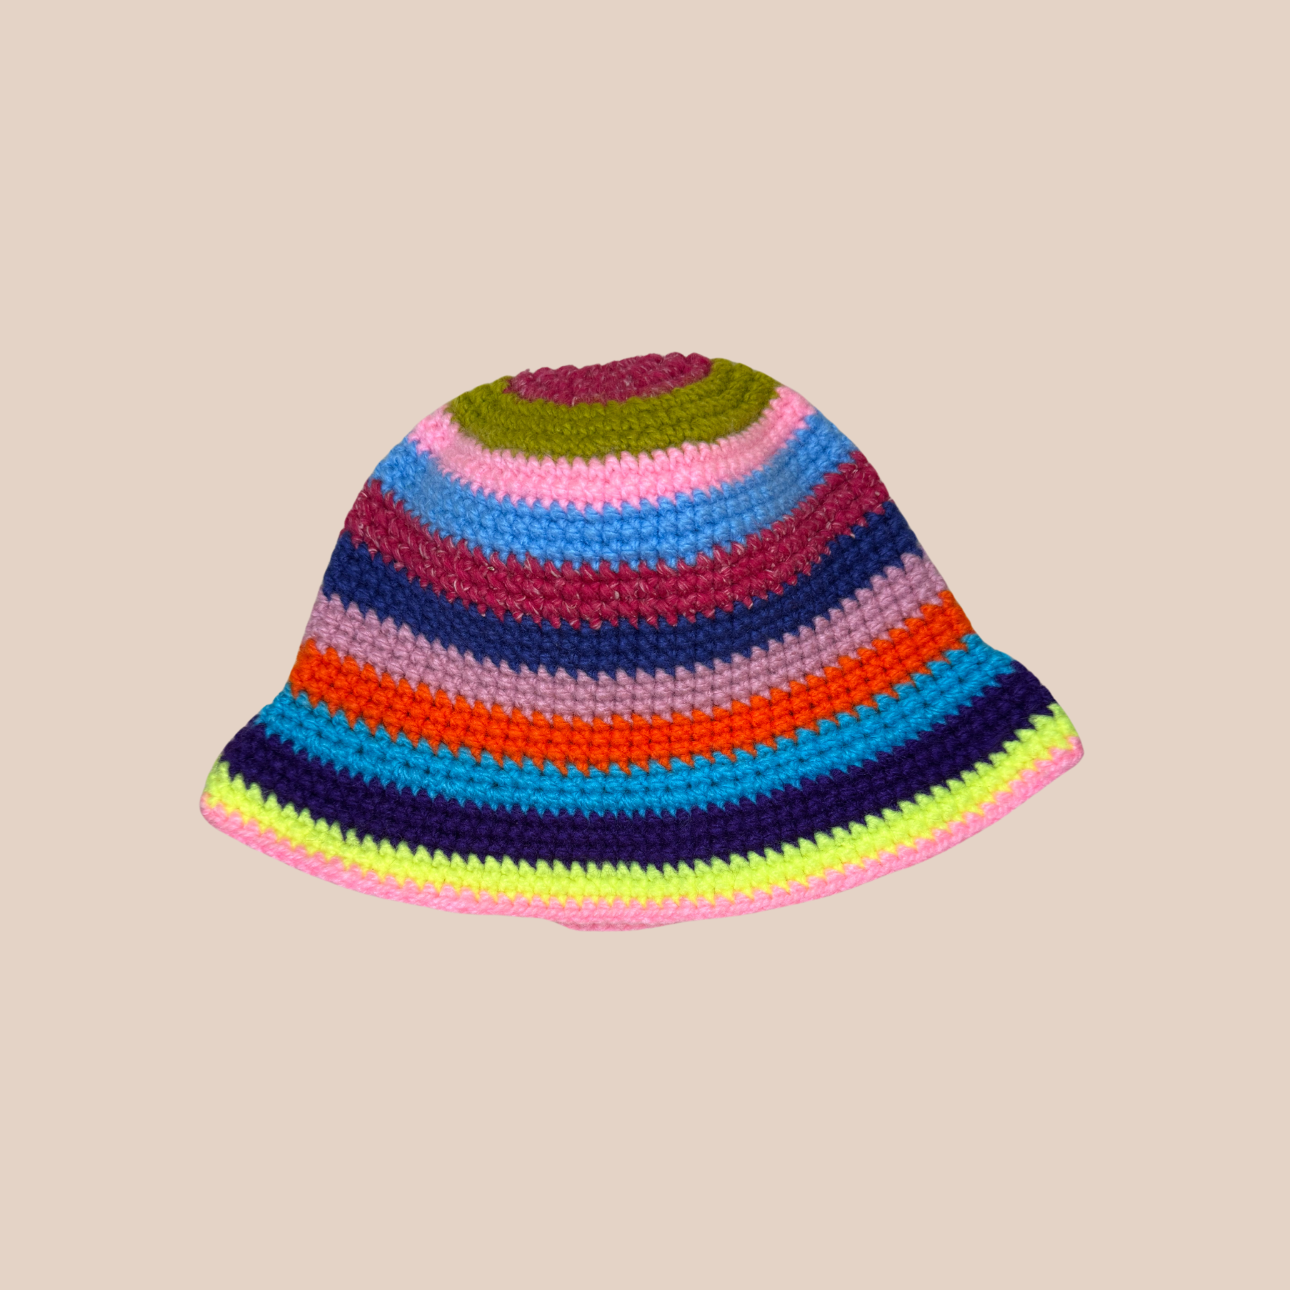 Image d'un bucket hat rayé crocheté en laine et acrylique, arborant des couleurs vives et audacieuses